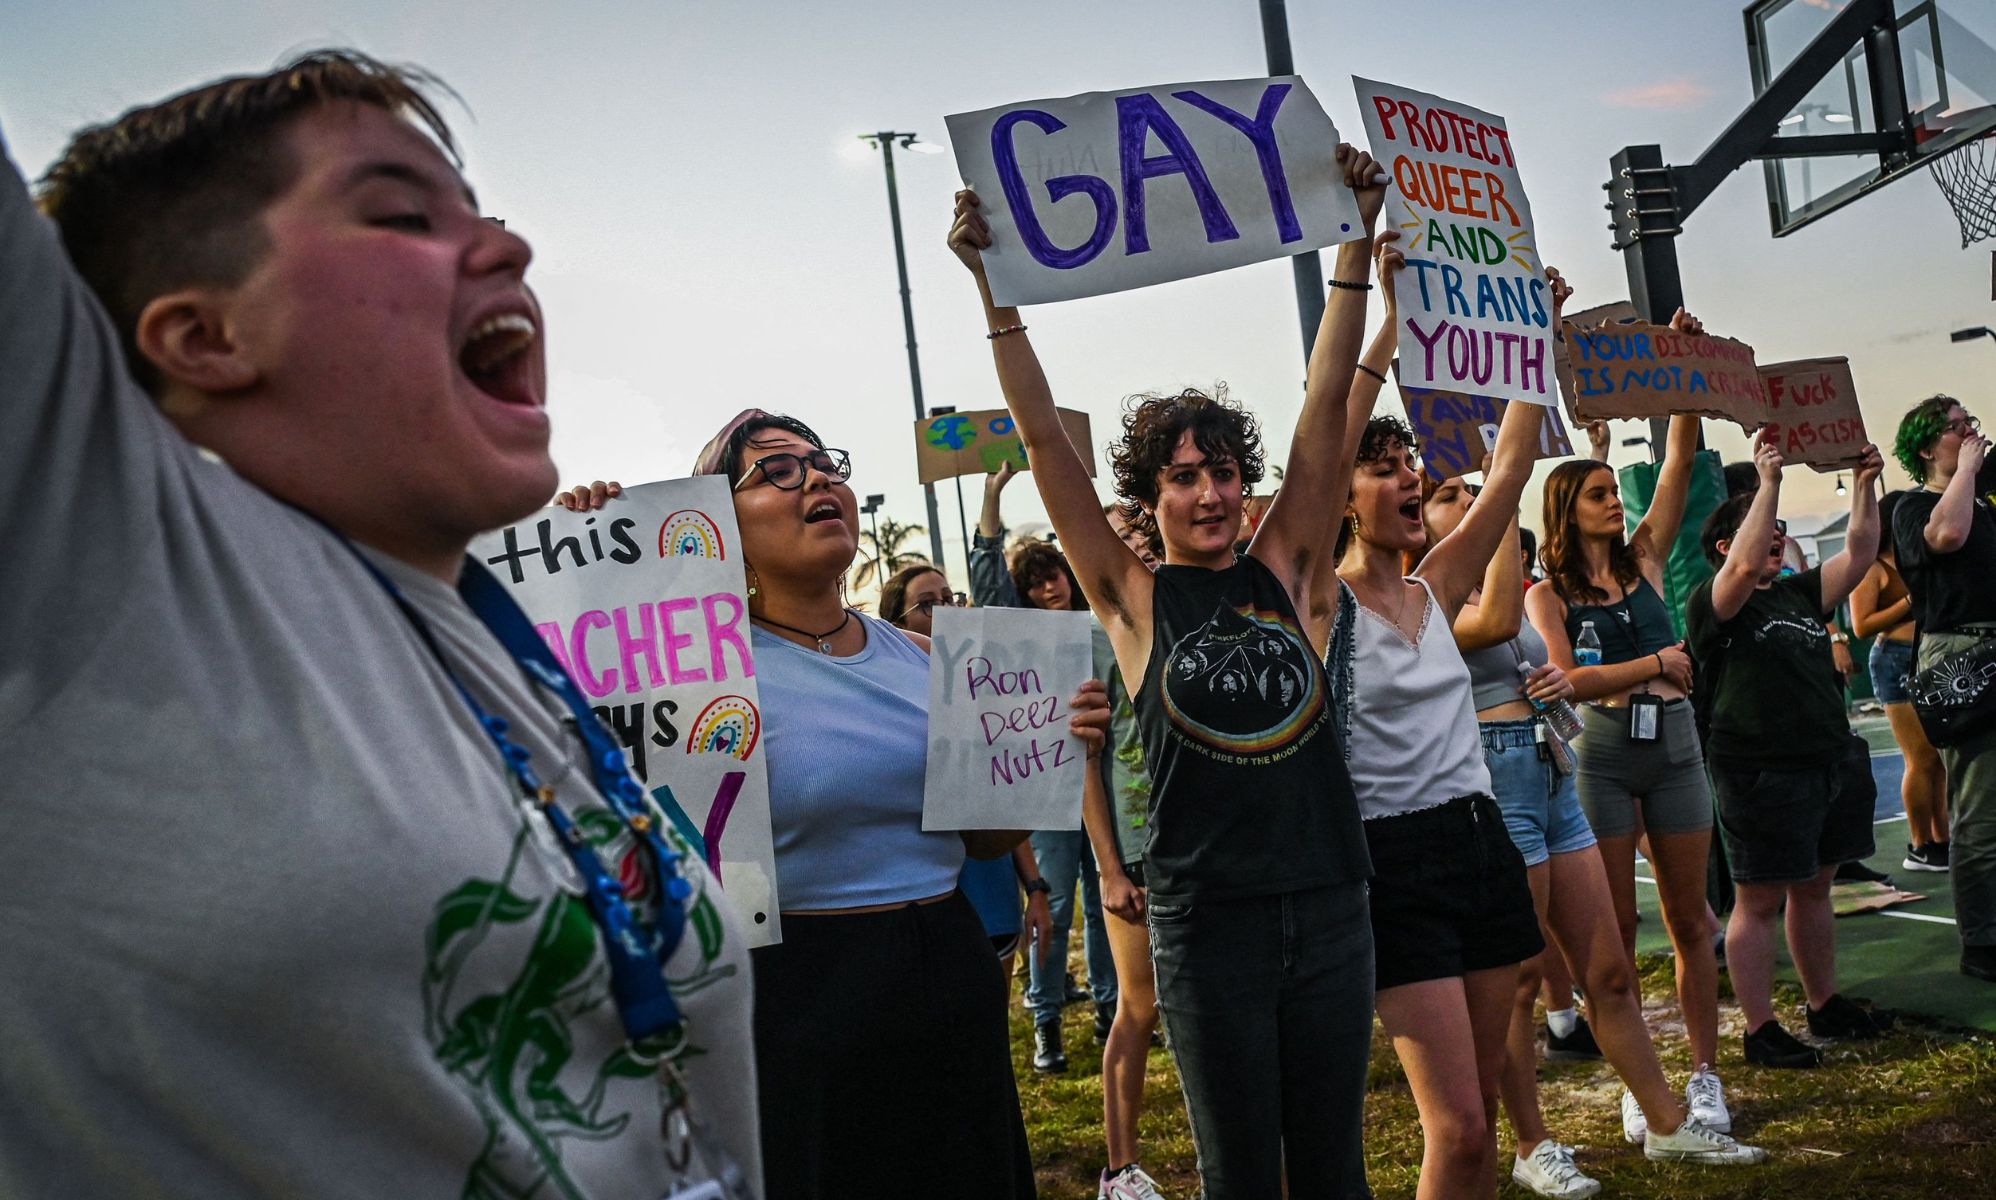 Una obra de teatro de estudiantes en Florida es cancelada por la ley "No digas gay"